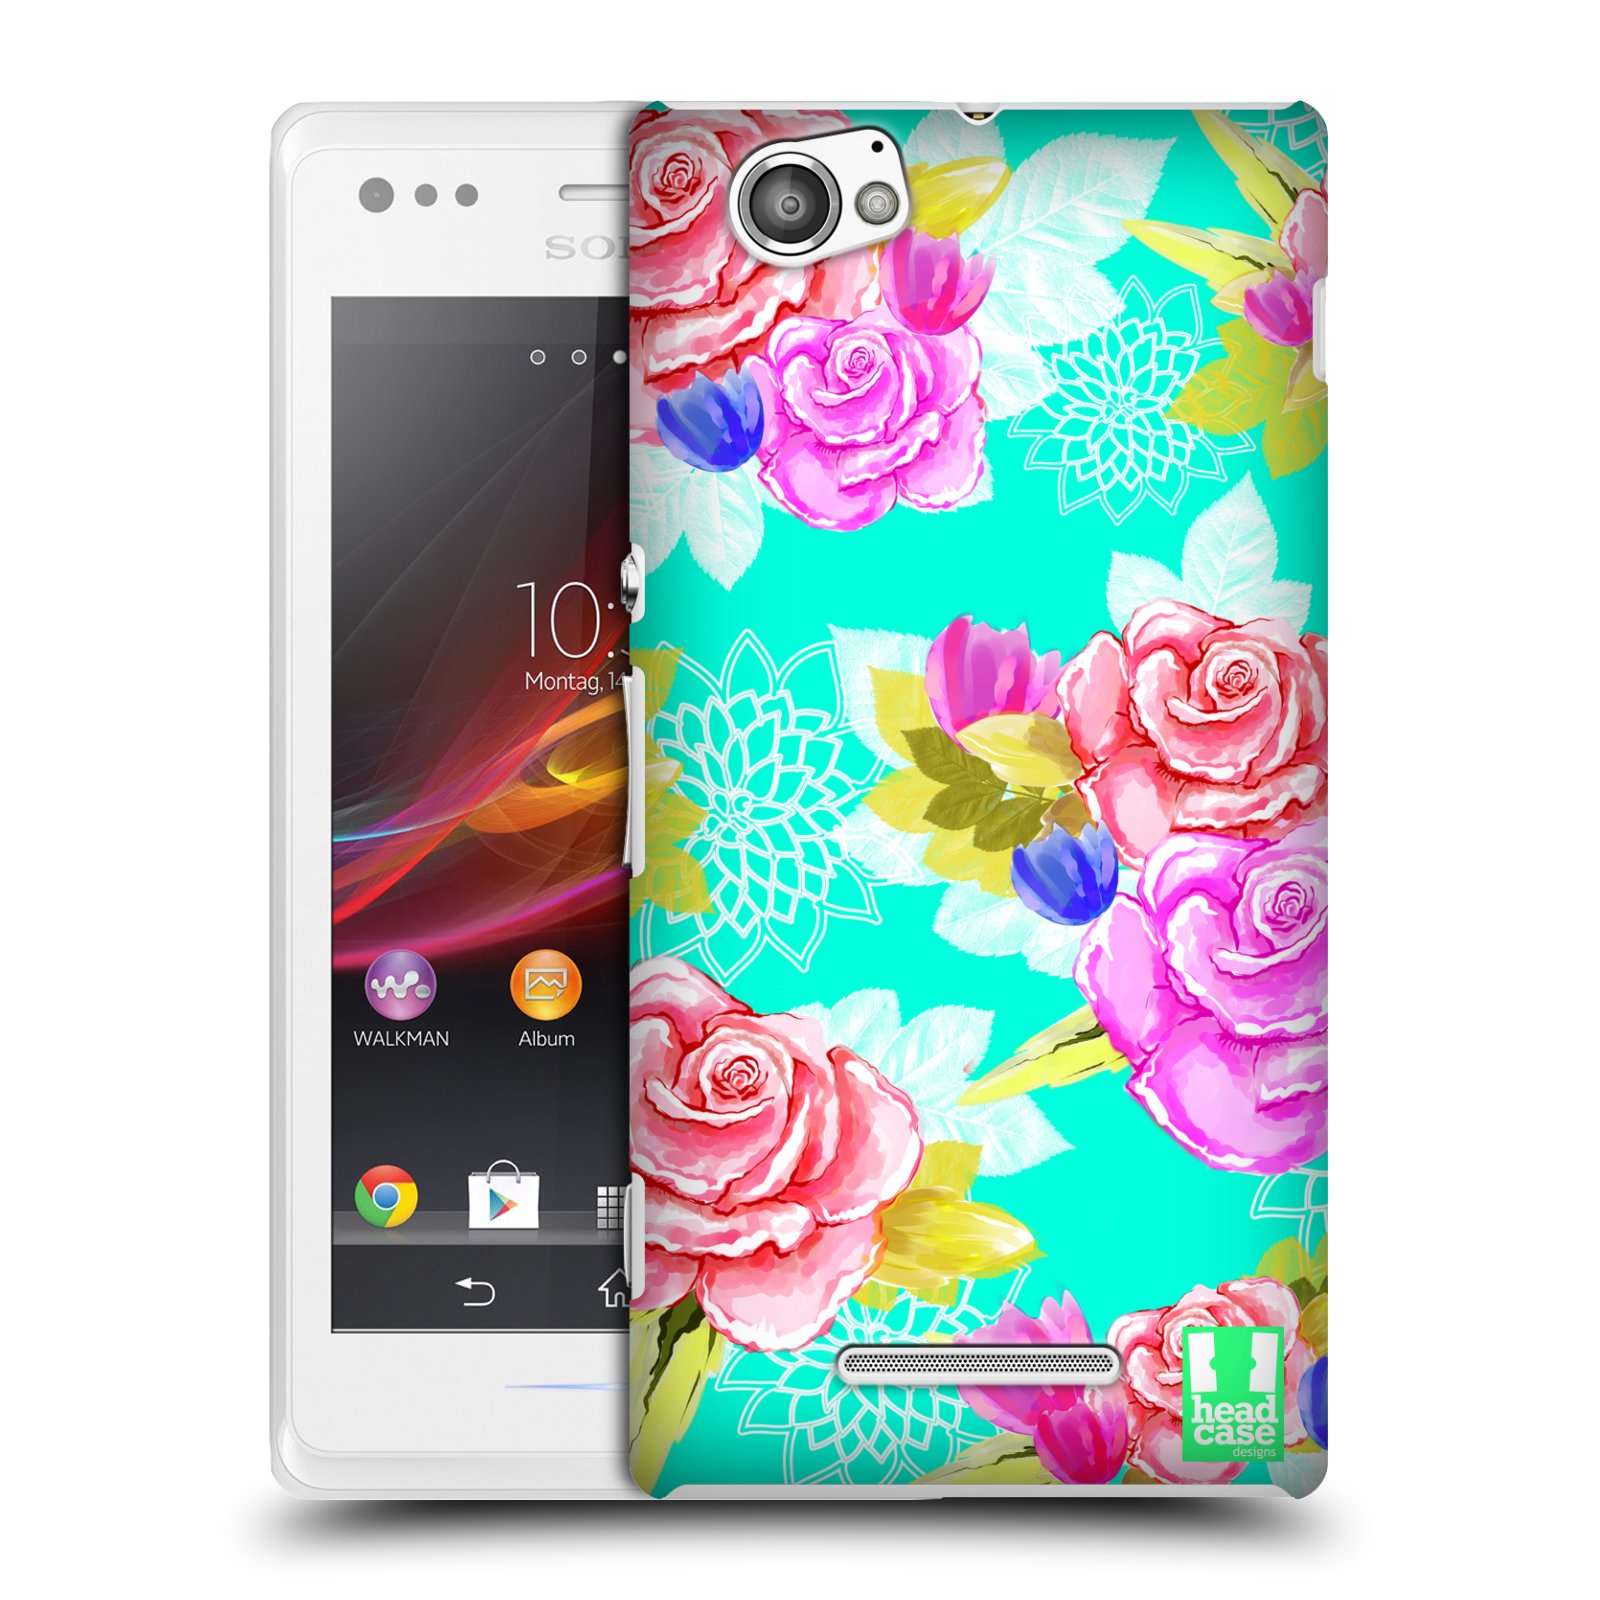 HEAD CASE plastový obal na mobil Sony Xperia M vzor Malované květiny barevné AQUA MODRÁ